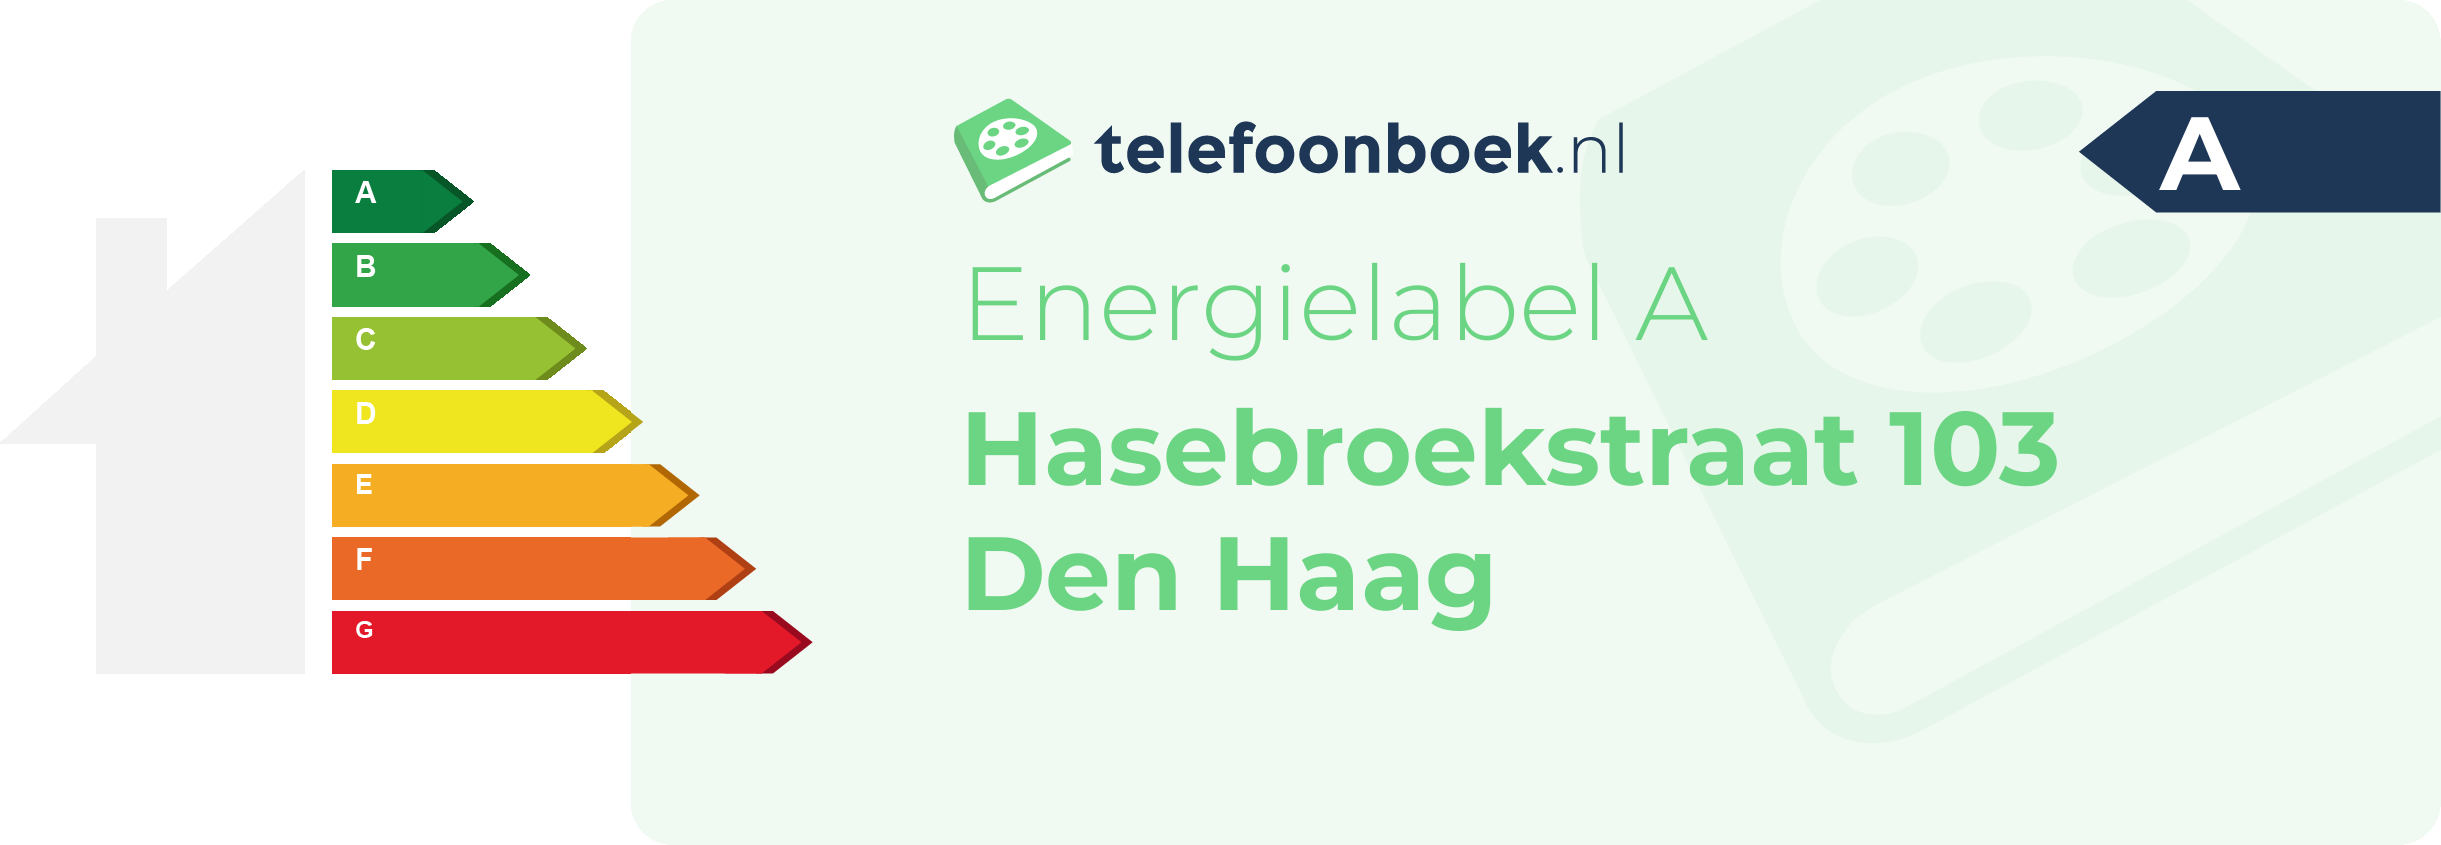 Energielabel Hasebroekstraat 103 Den Haag